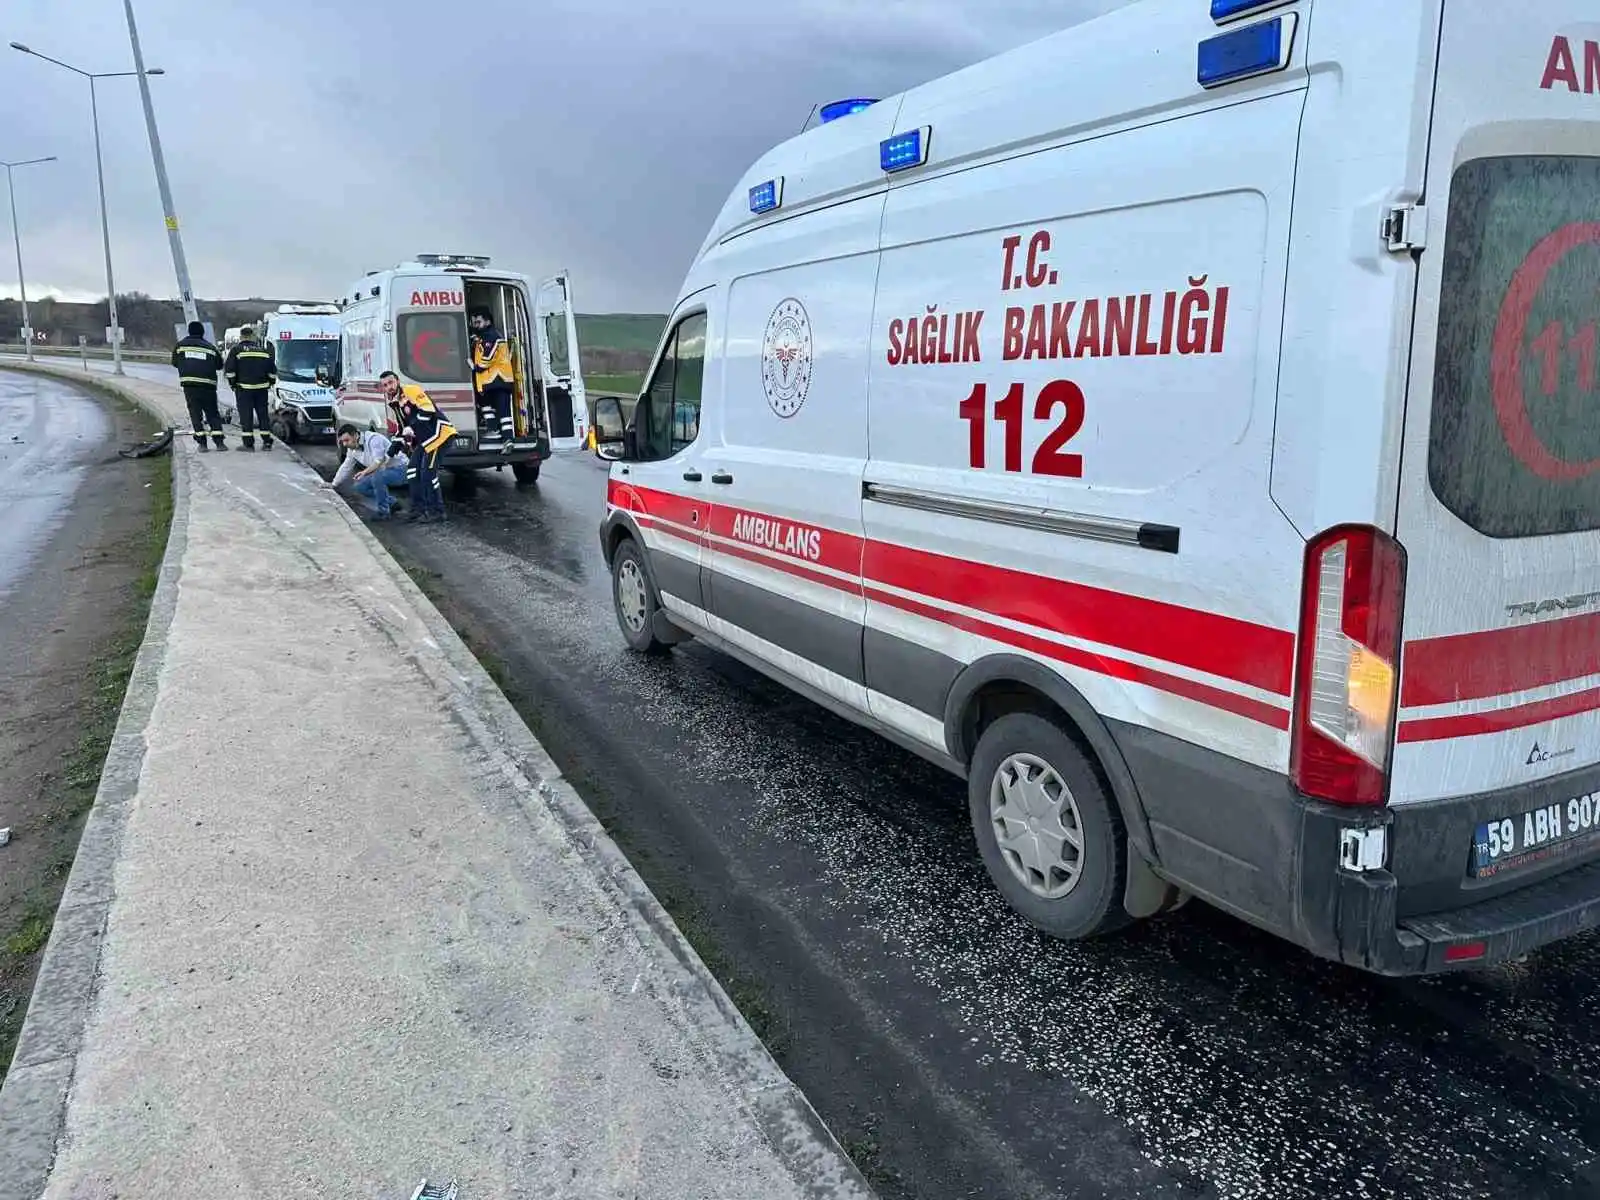 Tekirdağ'da servis aracı kaza yaptı: 3 yaralı
